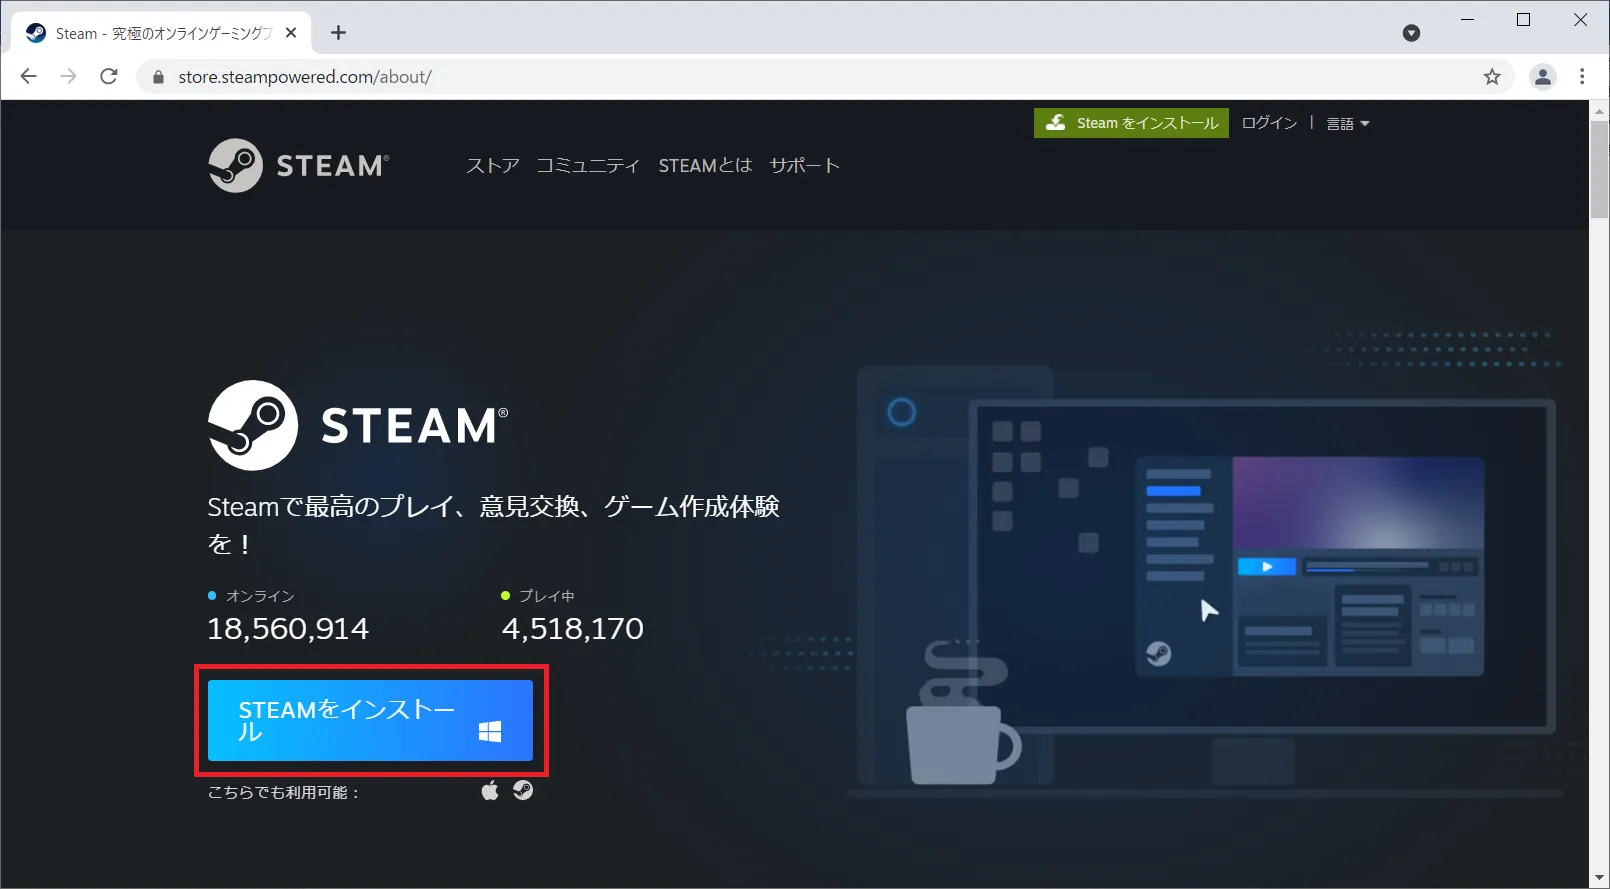 インストールページで「STAMをインストール」をクリックすると「Steamクライアント」のダウンロードが開始されます。